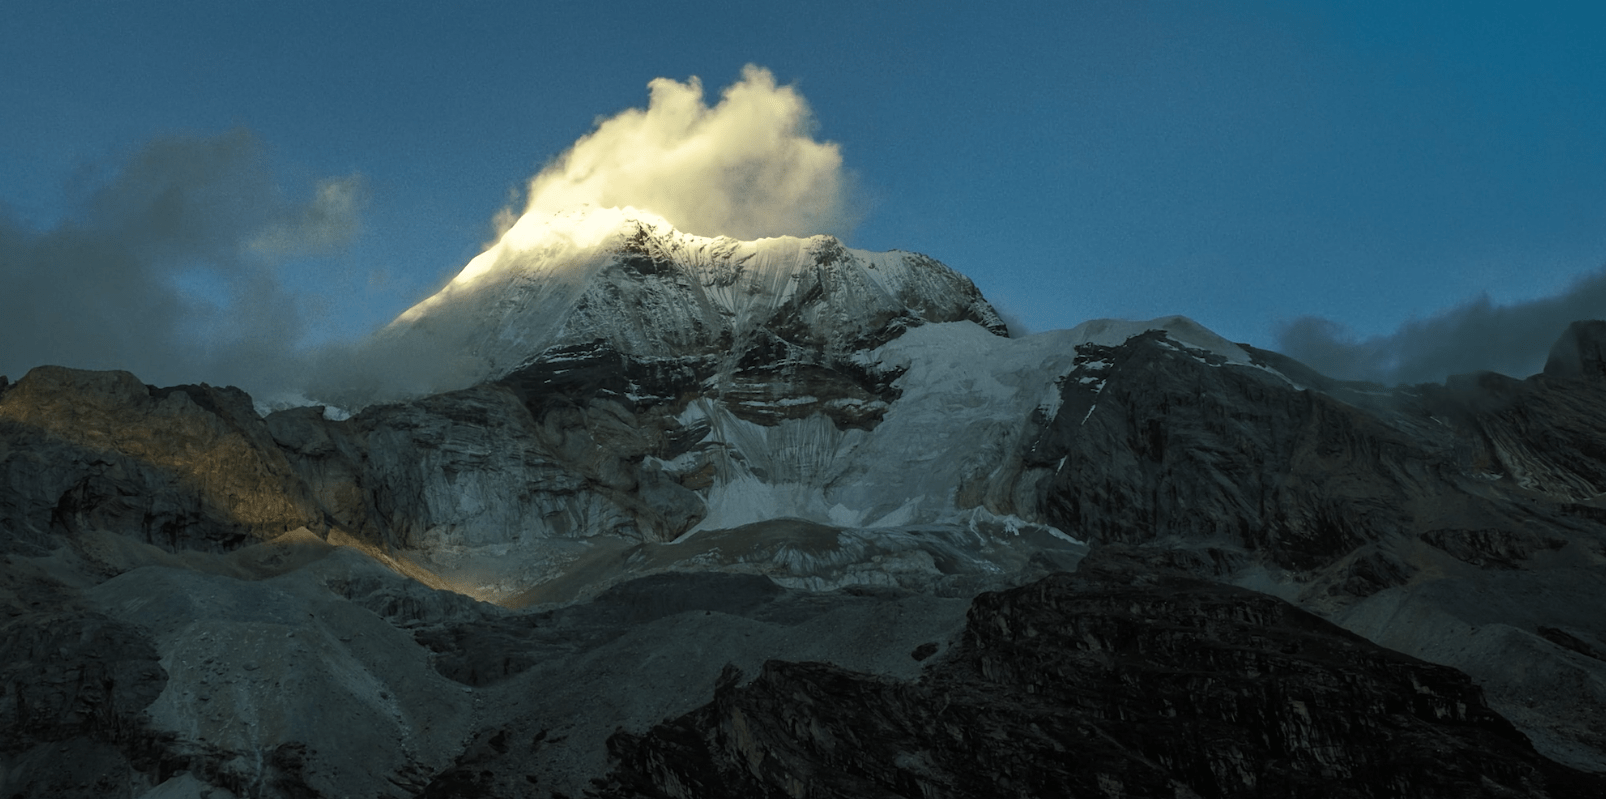 The Kora Himalayan Pilgrimage Base Of Nineteen Thousand